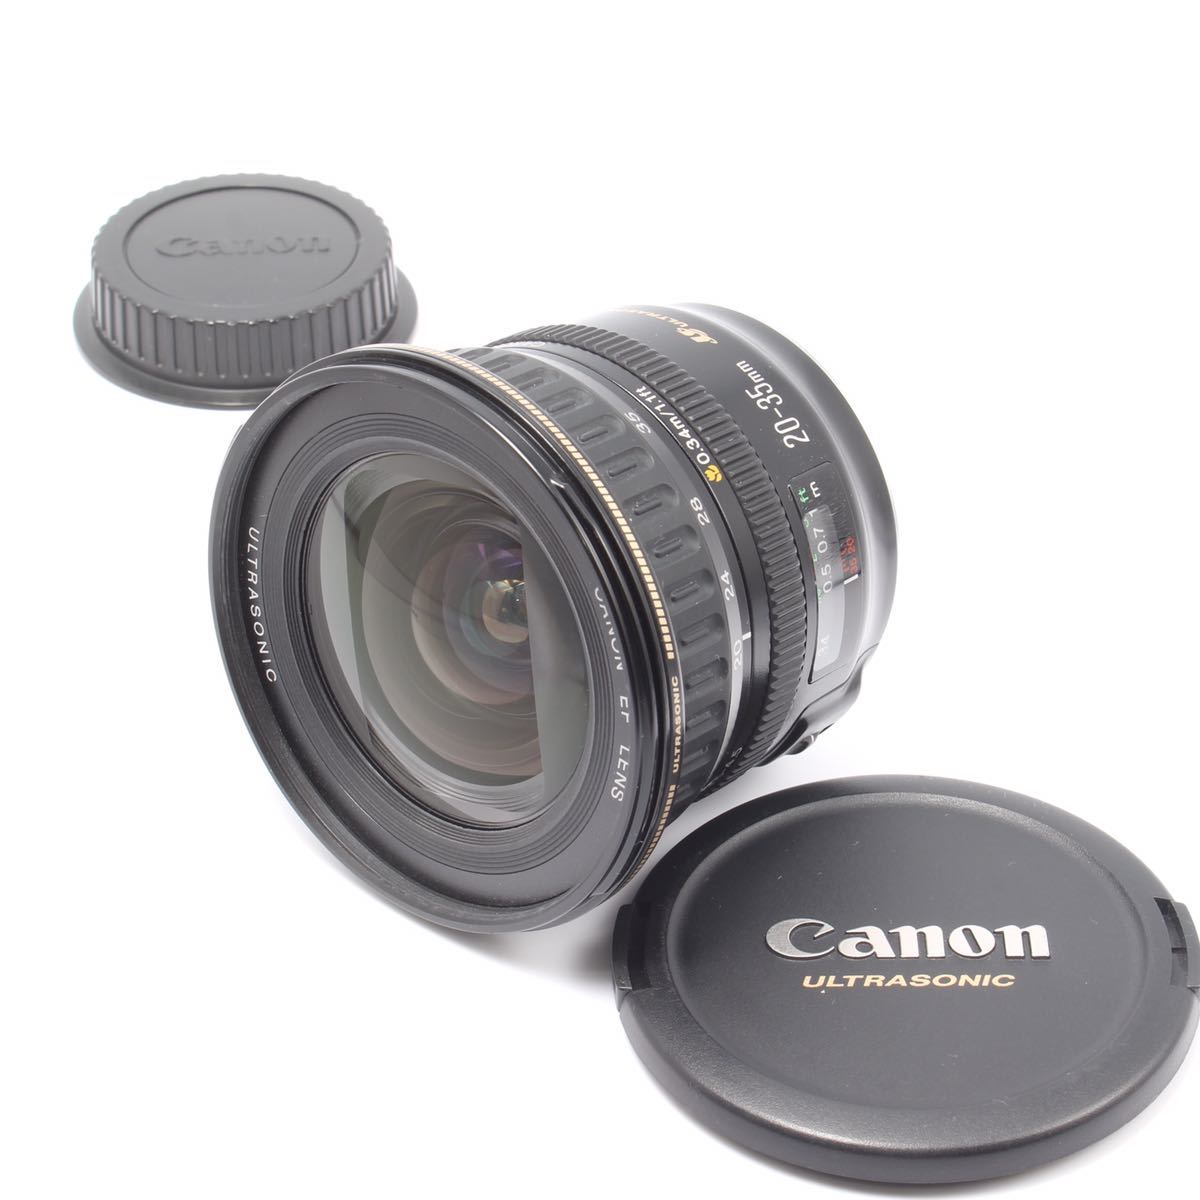 広角ズーム Canon EF 20-35mm F3.5-4.5 USM-